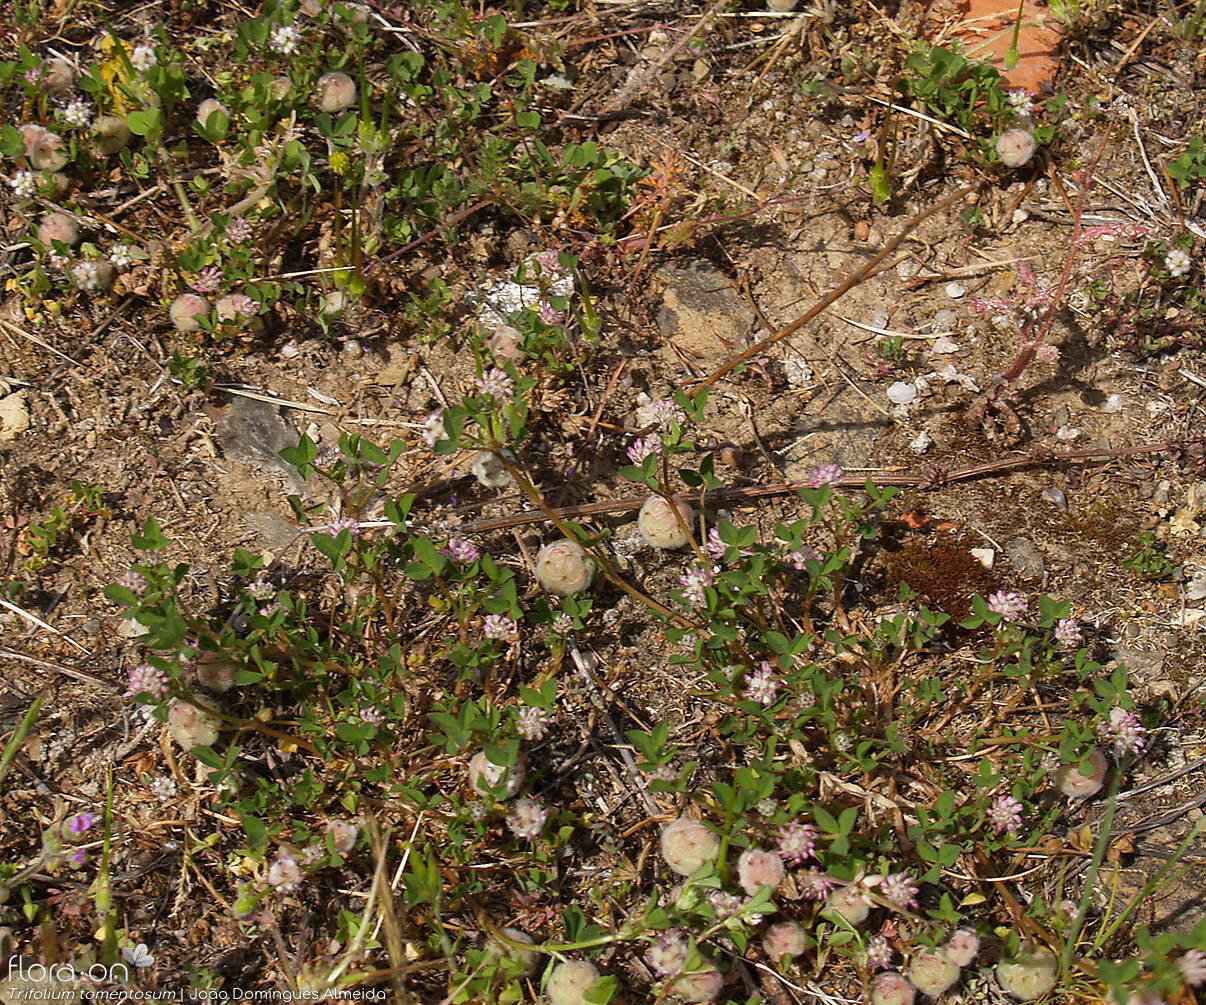 Trifolium tomentosum - Hábito | João Domingues Almeida; CC BY-NC 4.0